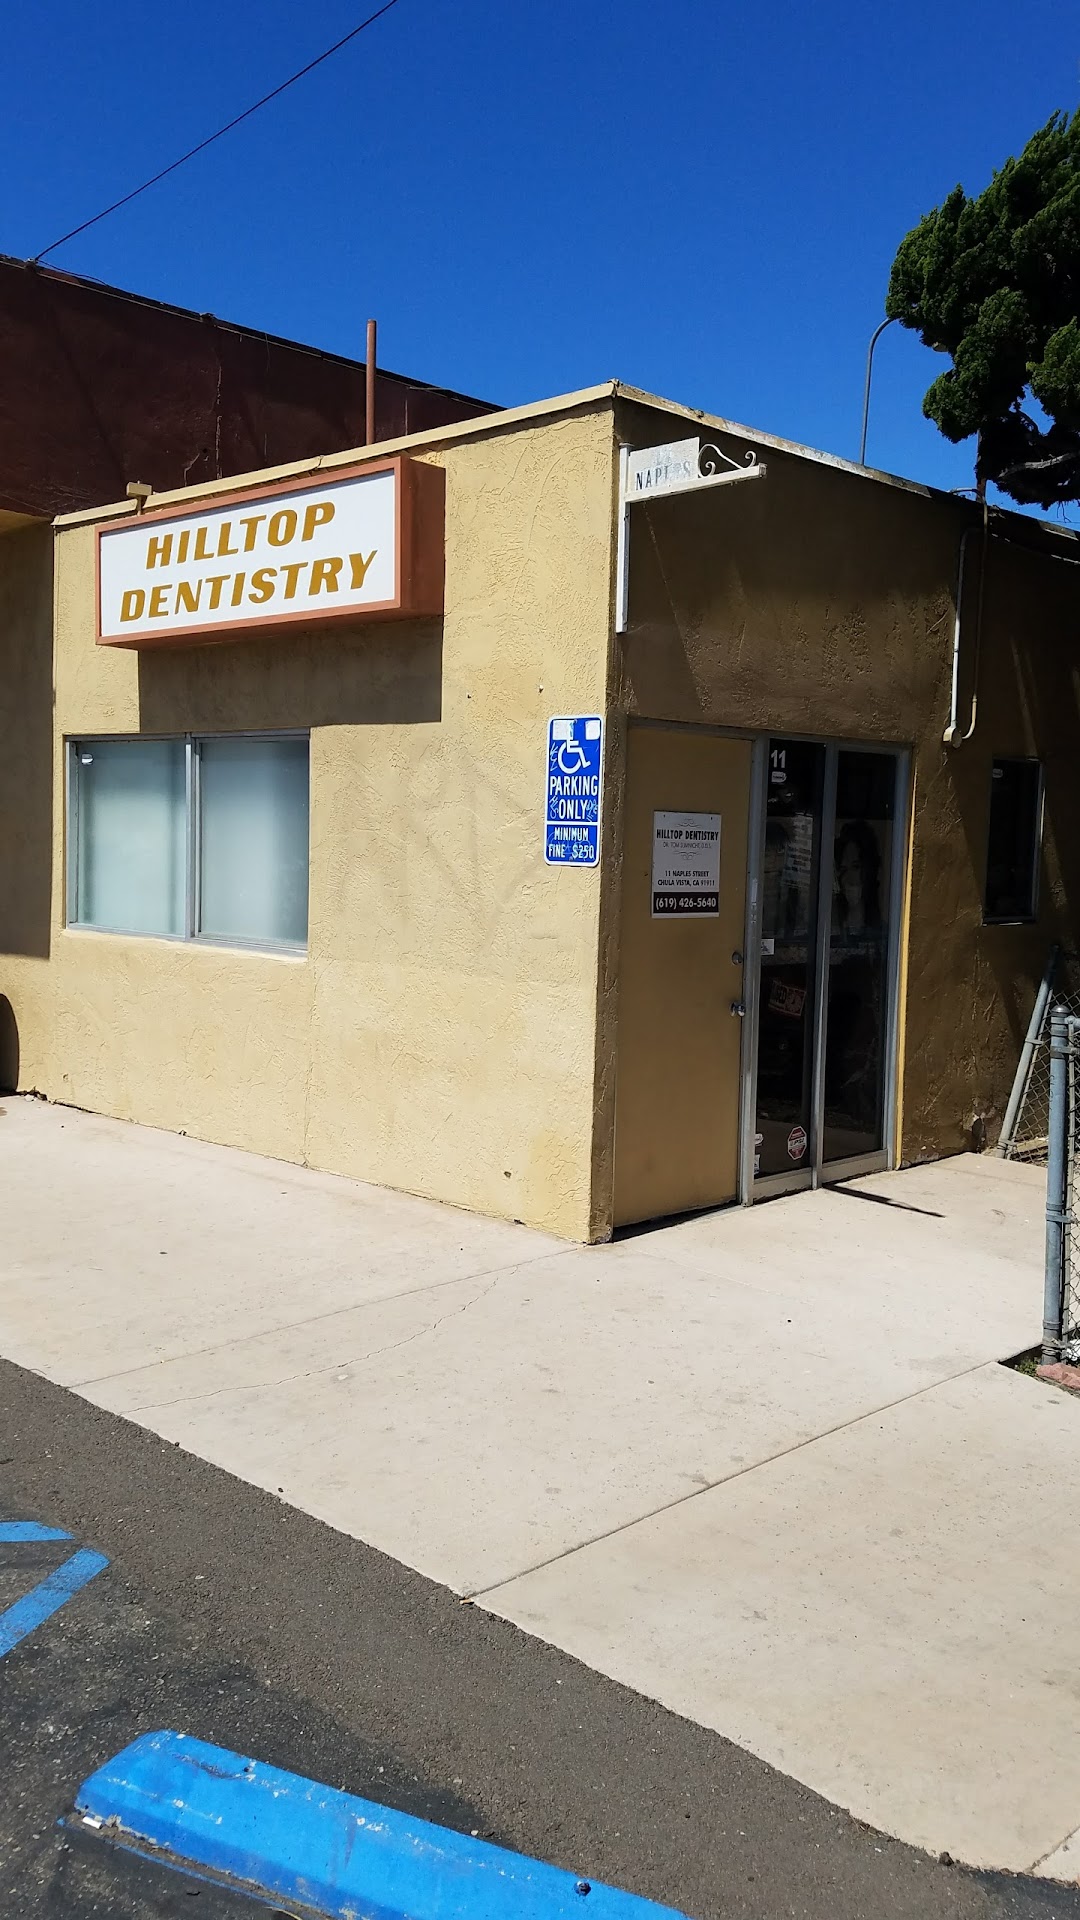 Chula Vista Hilltop Dentistry